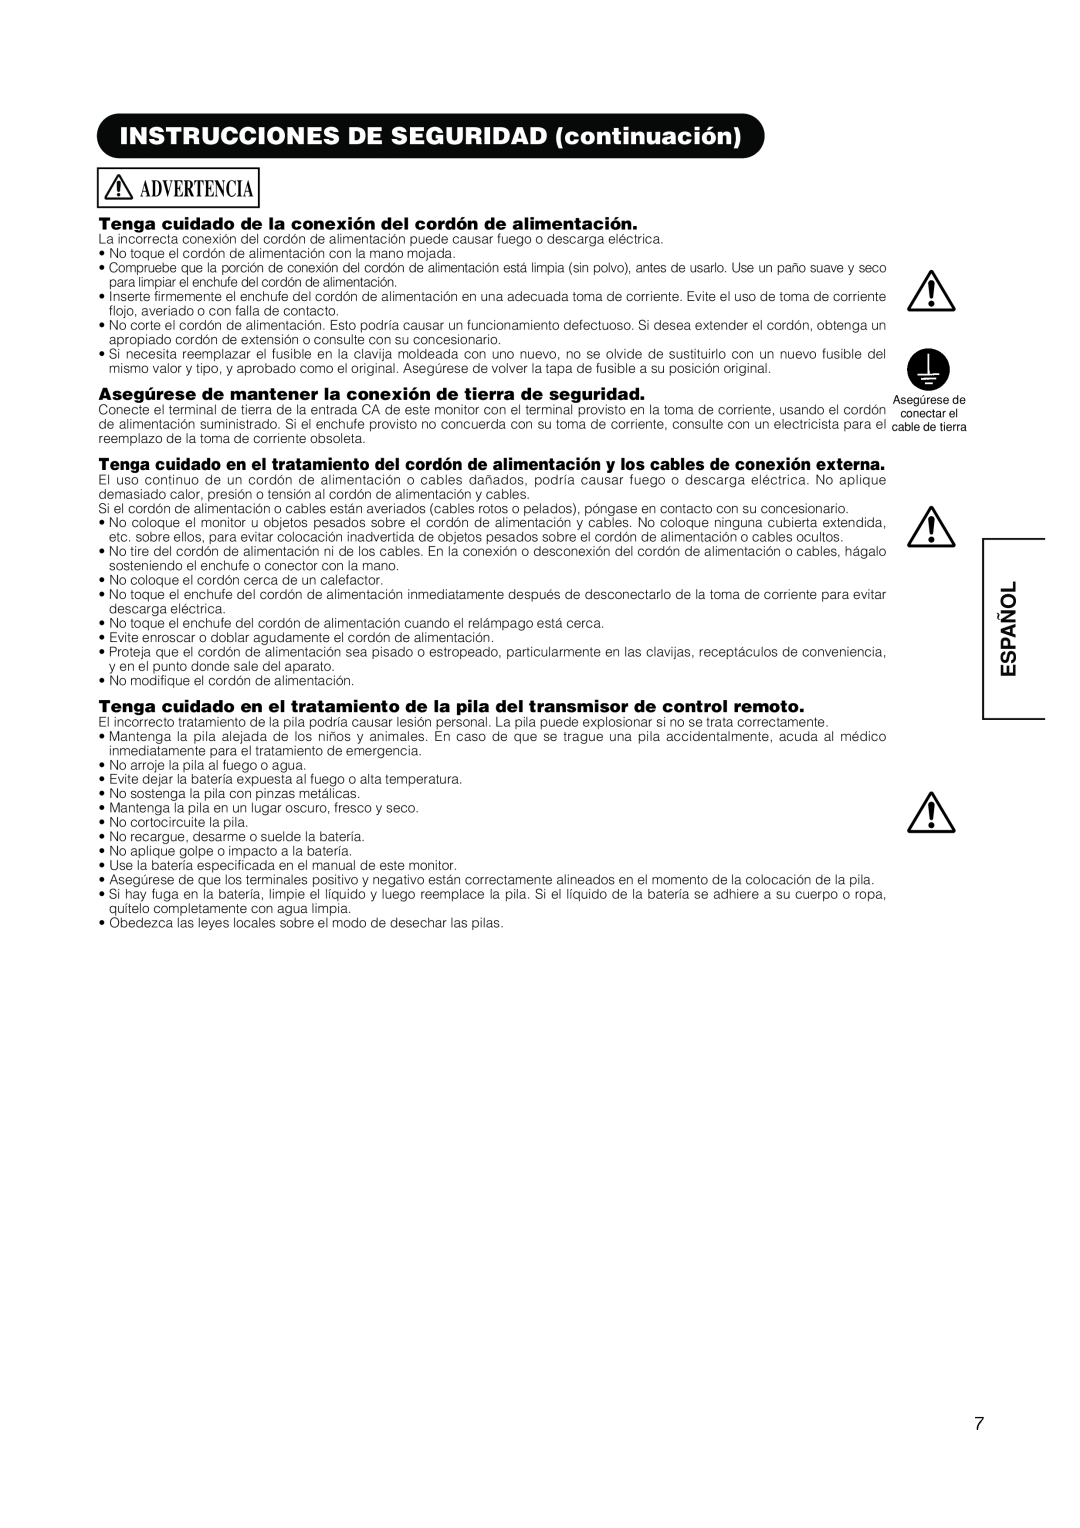 Hitachi PW1A user manual INSTRUCCIONES DE SEGURIDAD continuación, Advertencia, Español 